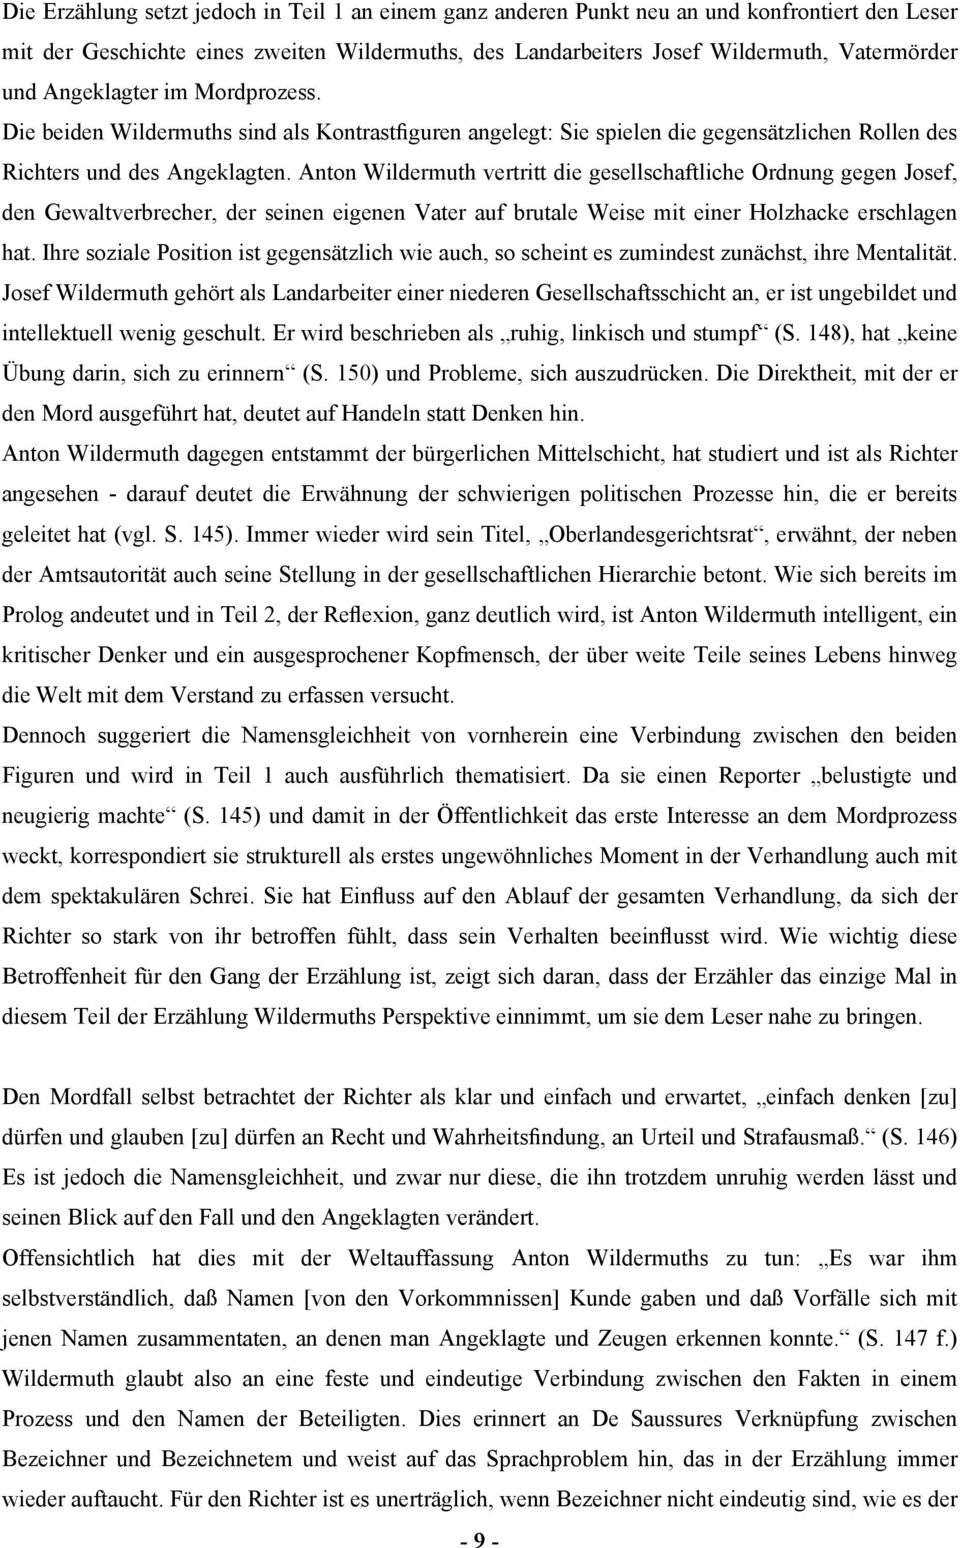 Anton Wildermuth vertritt die gesellschaftliche Ordnung gegen Josef, den Gewaltverbrecher, der seinen eigenen Vater auf brutale Weise mit einer Holzhacke erschlagen hat.